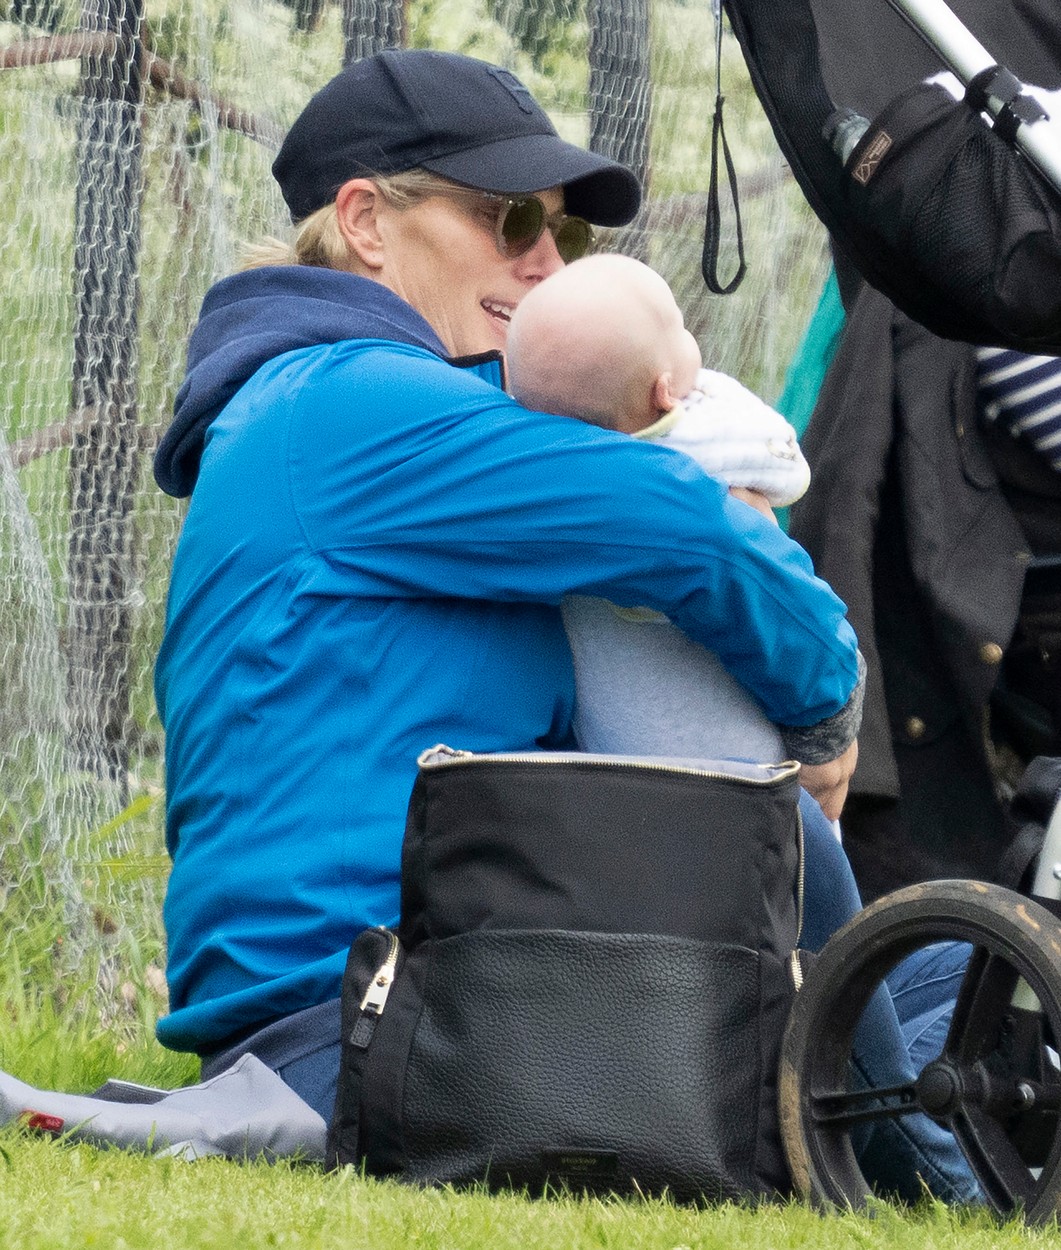 Zara Tindall și bebelușul ei, pentru prima dată la un eveniment public, în 2021, la un concurs de echitație